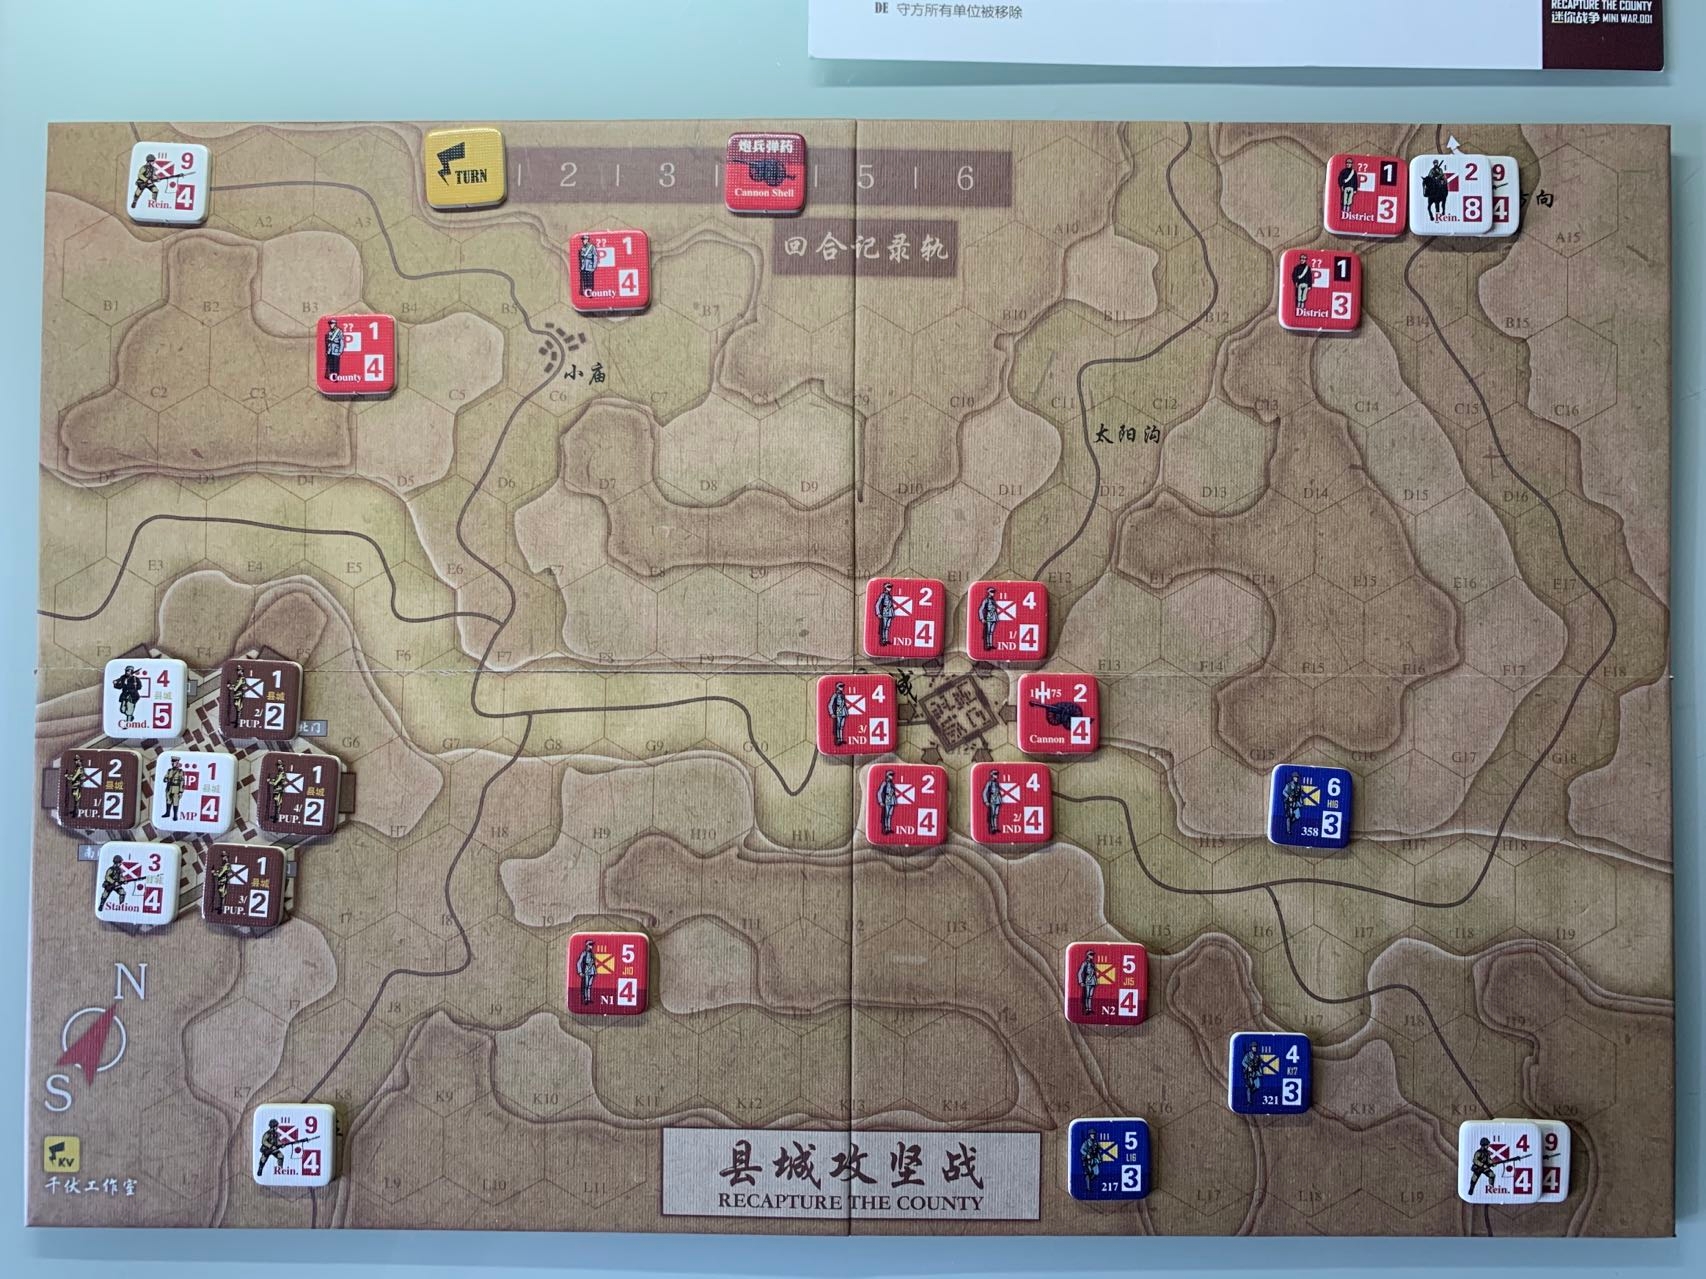 如图，日方决定从县城西南方与南方各仅派1支9-4（即9攻击力、4移动力）的增援部队，而在北部与东部布置了增援主力，分别为2-8、9-4以及4-4、9-4。